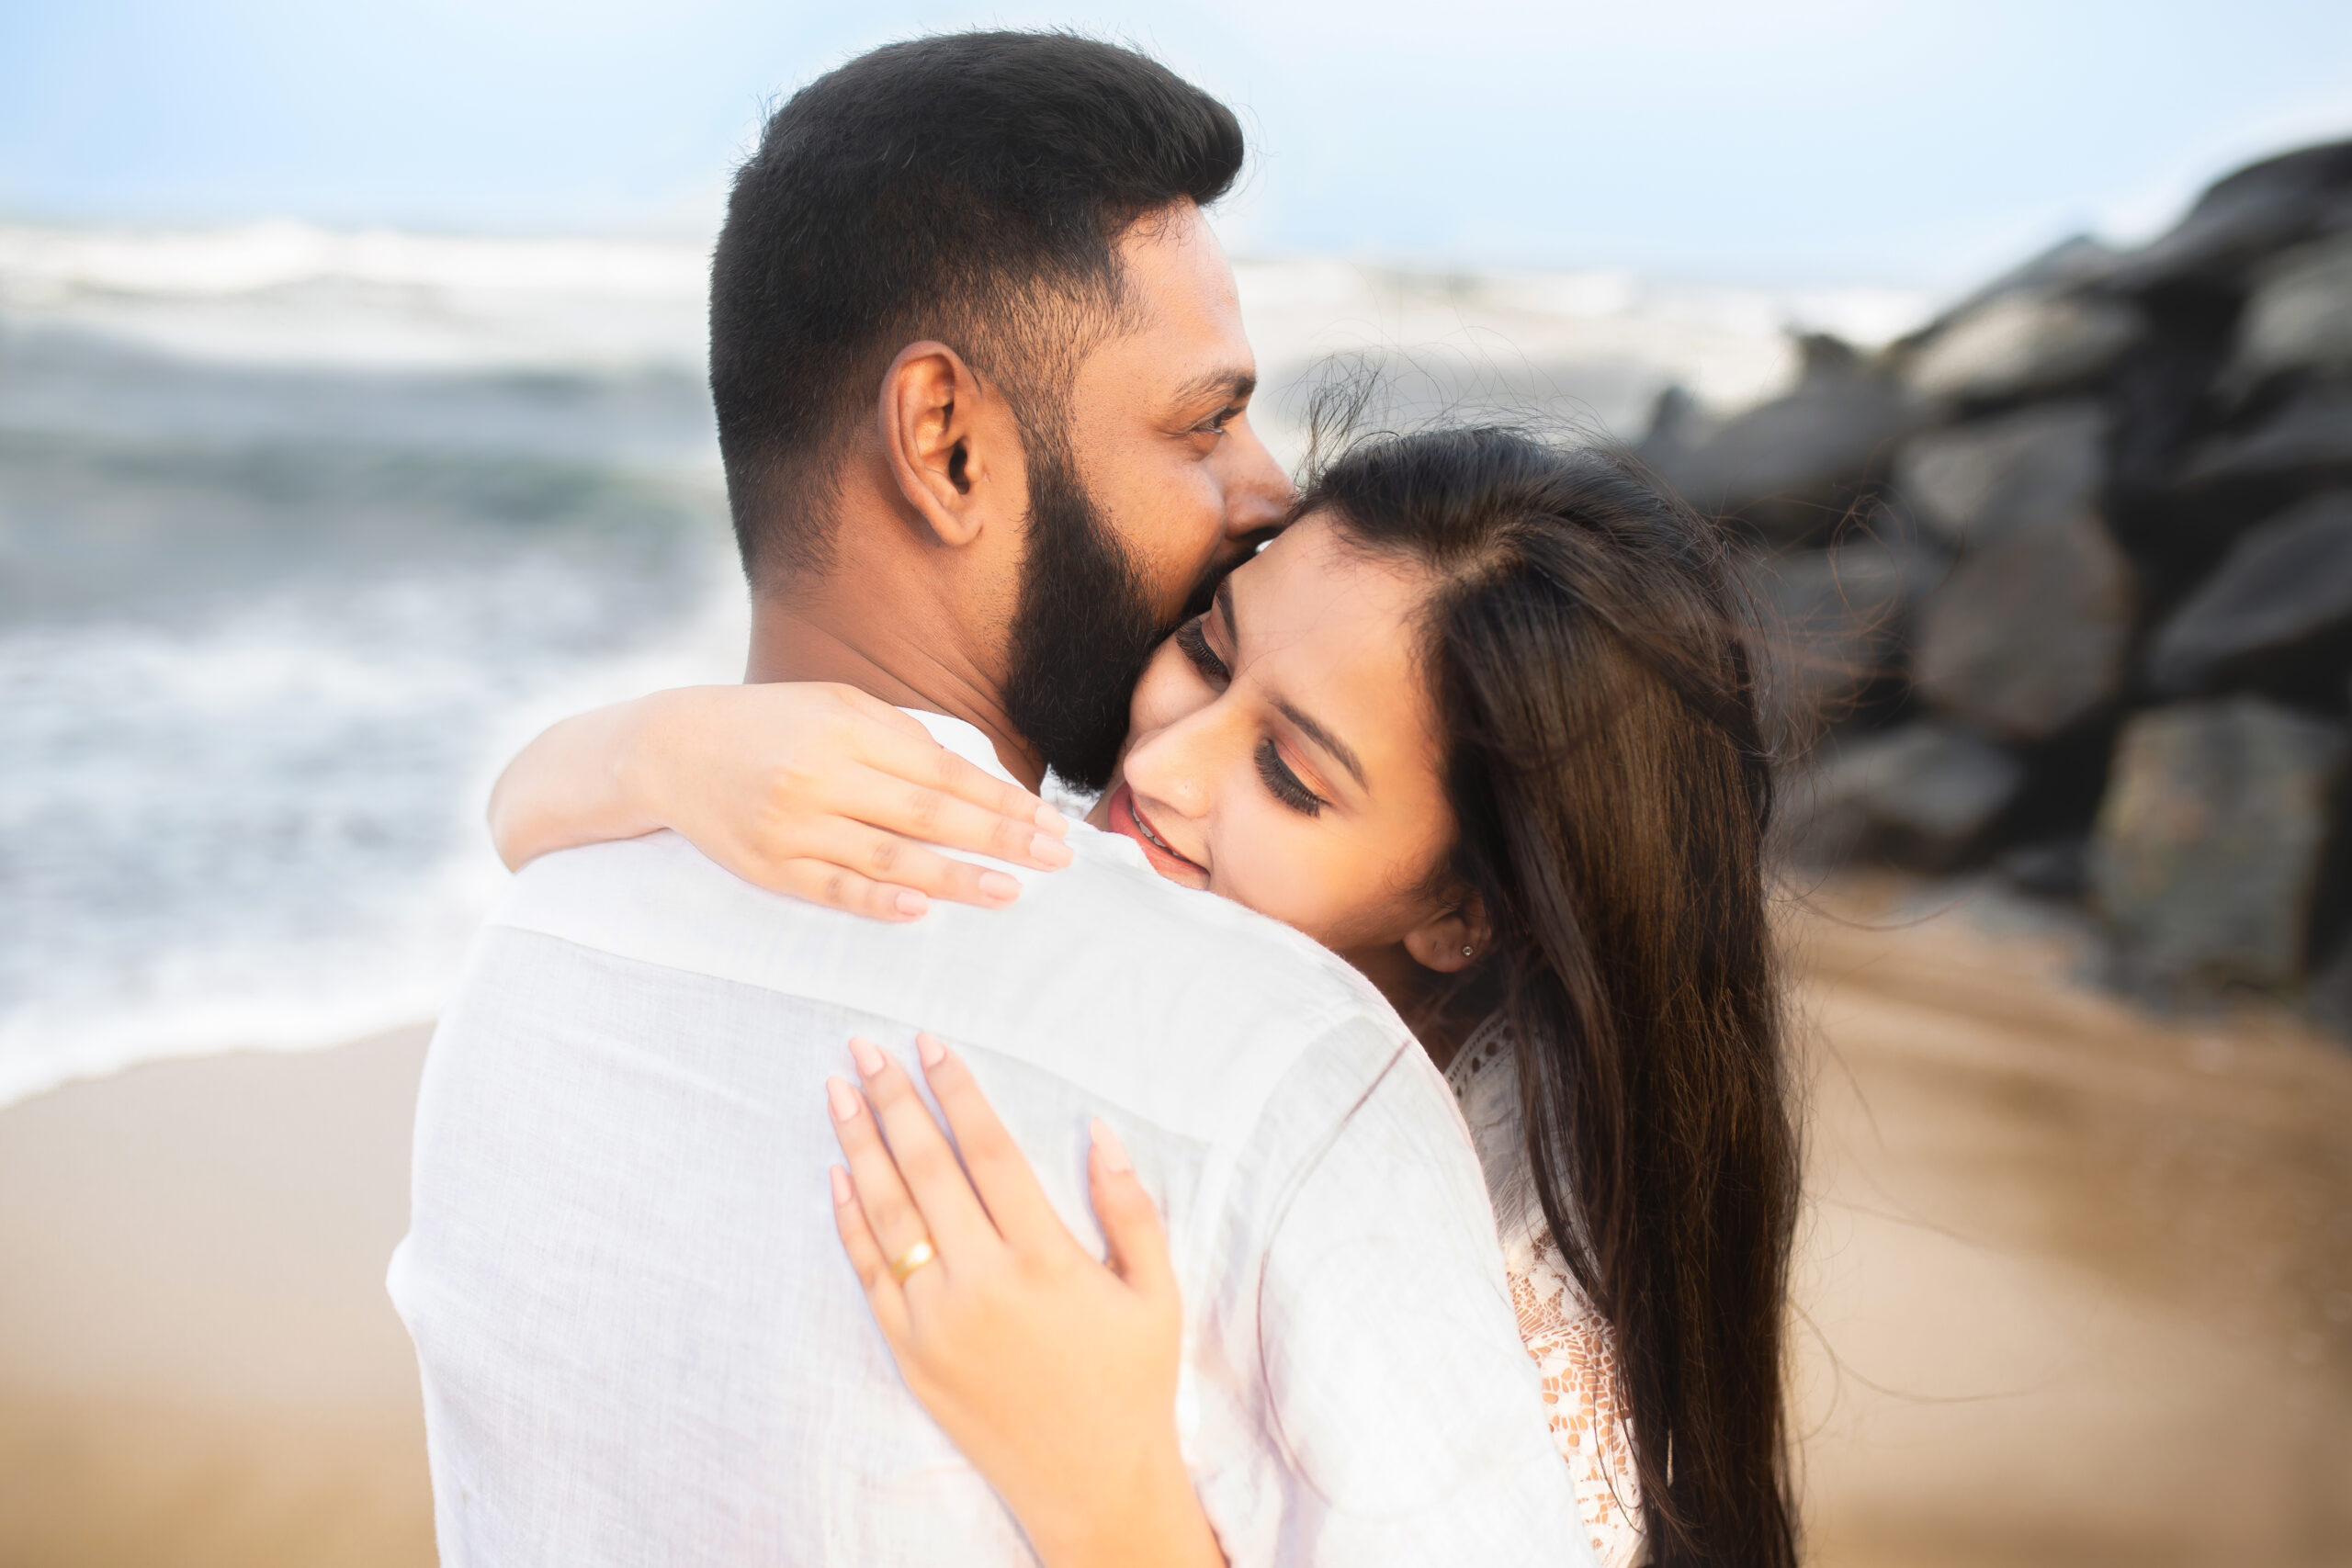 Mia Khalifa Sexy Kiss Romance Kerala Fuck - The Art of Photography Ft. Sanjay Hari Photography